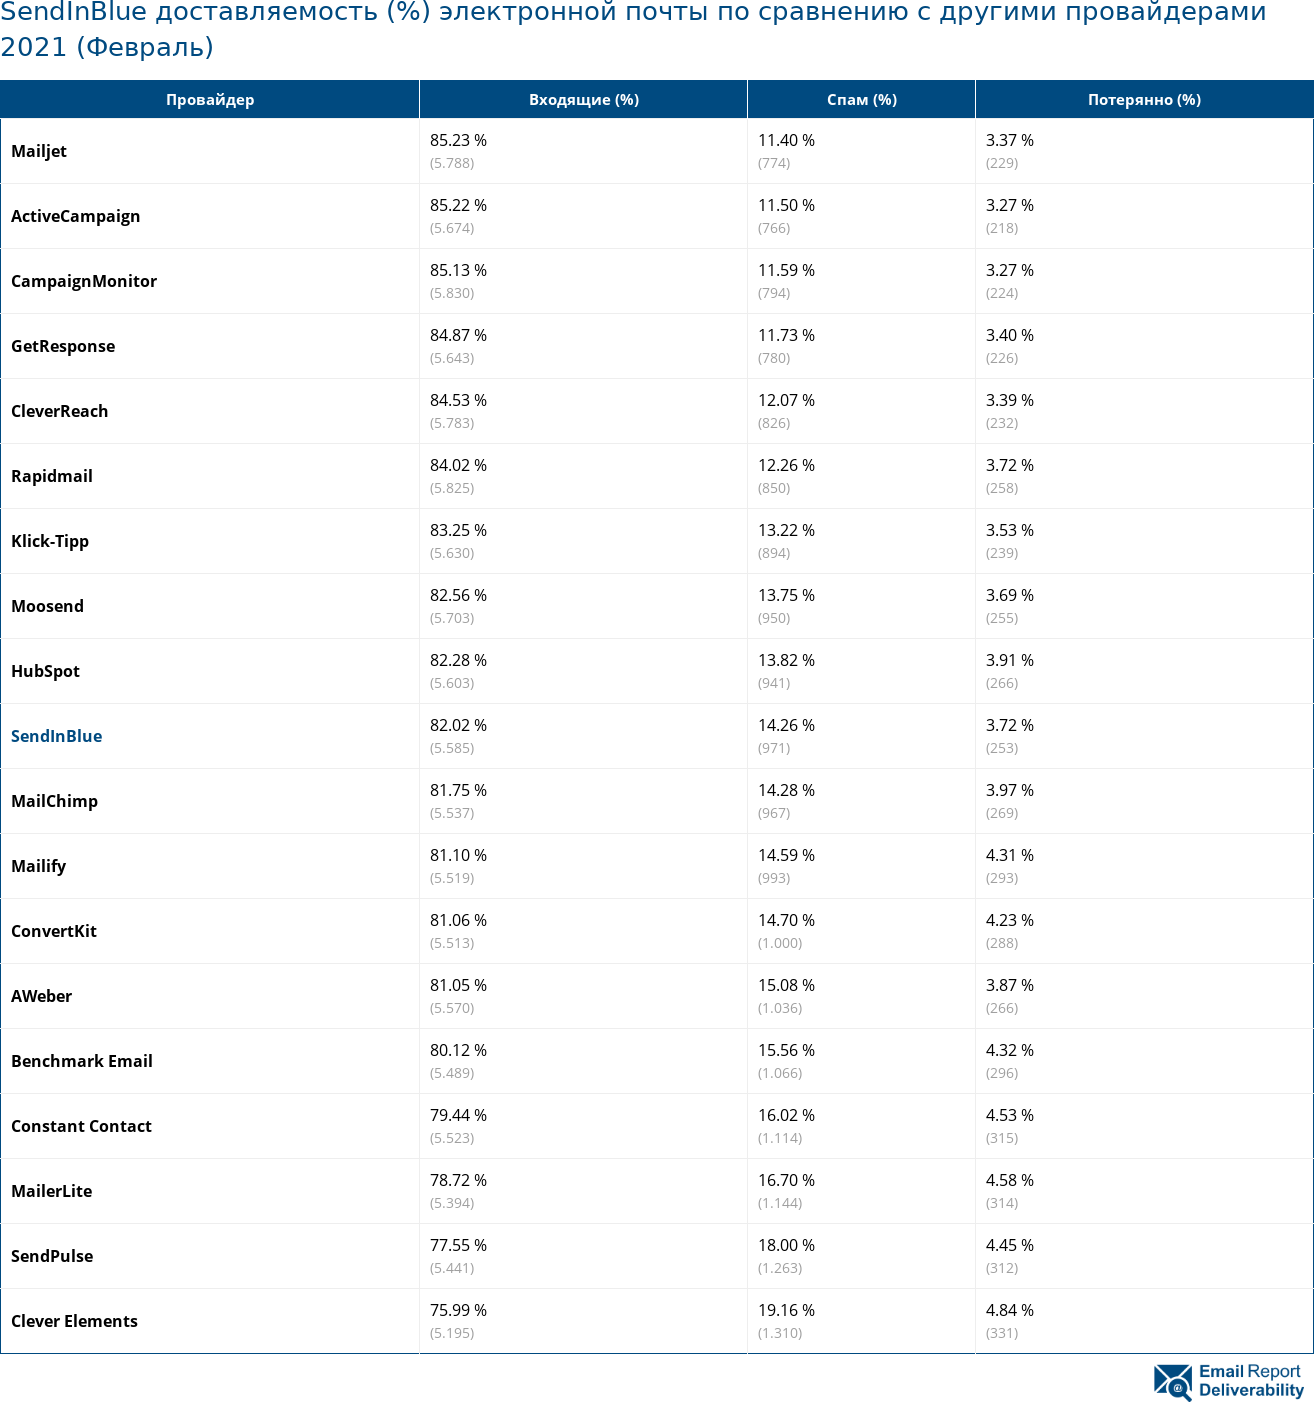 SendInBlue доставляемость (%) электронной почты по сравнению с другими провайдерами 2021 (Февраль)